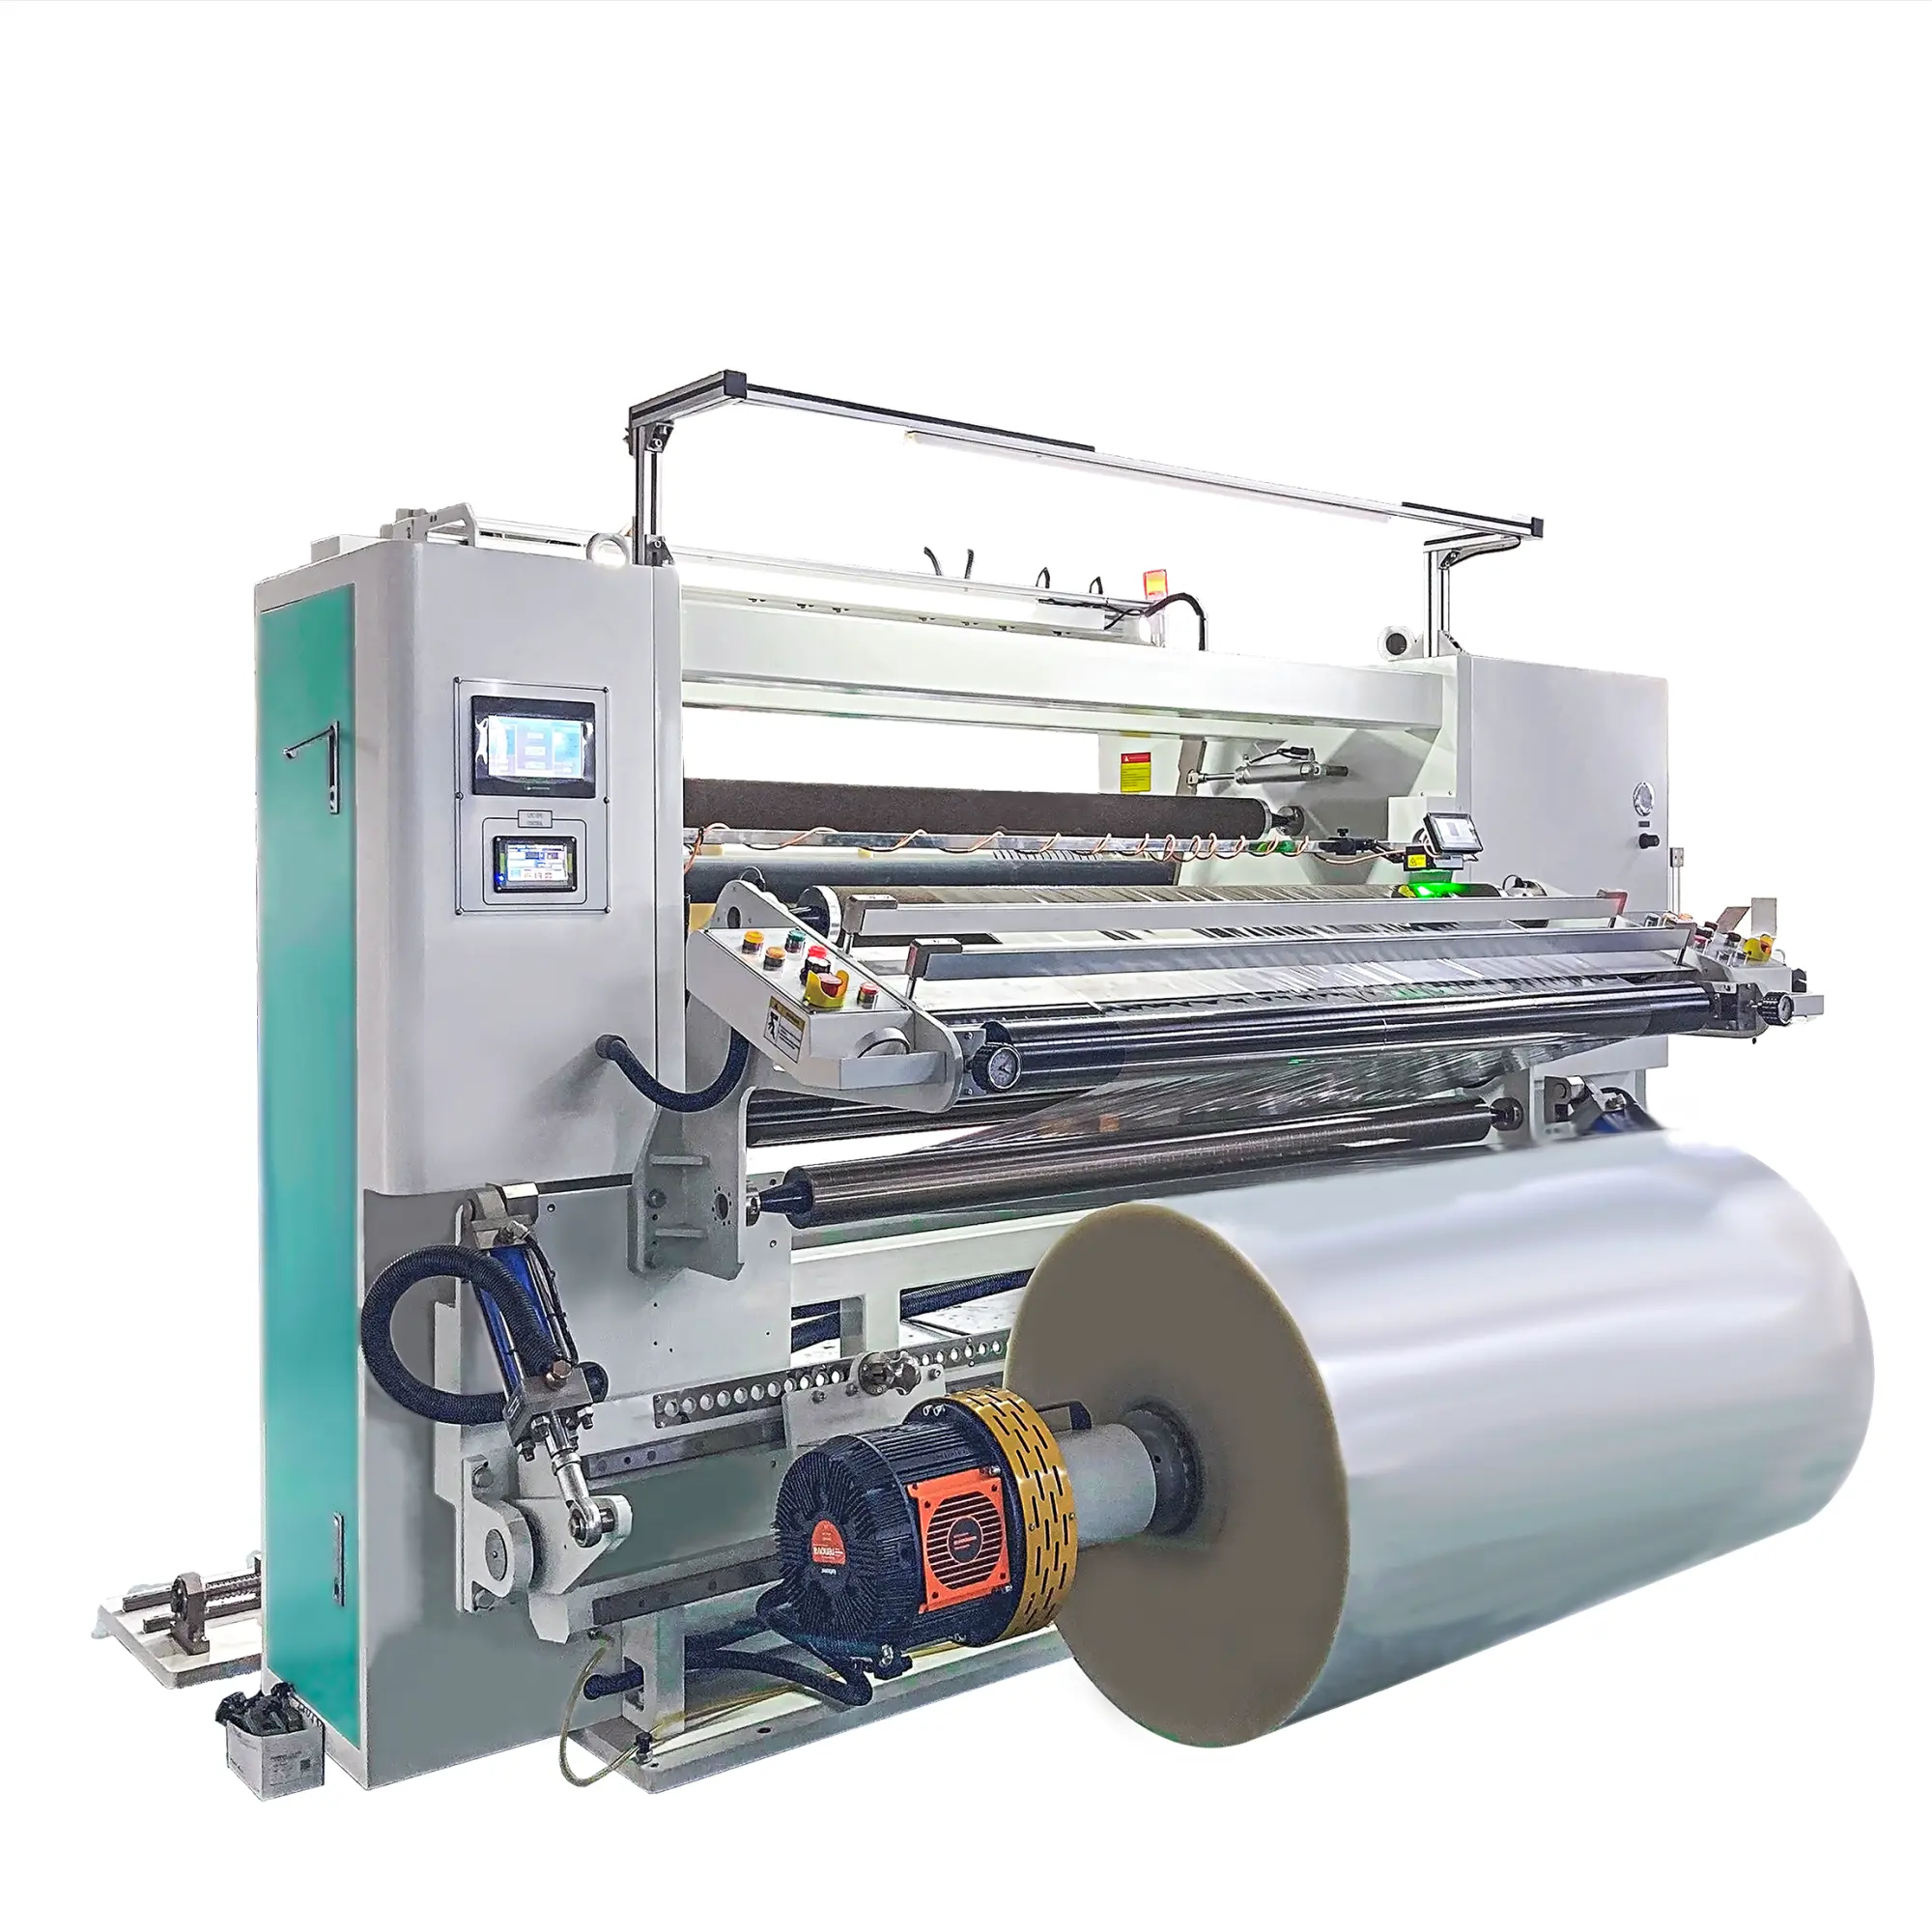 Mesin pemotong Film cetak kecepatan tinggi laminasi operasi otomatis dan mudah/Film/Foil/Label/kertas Slitter diskon besar